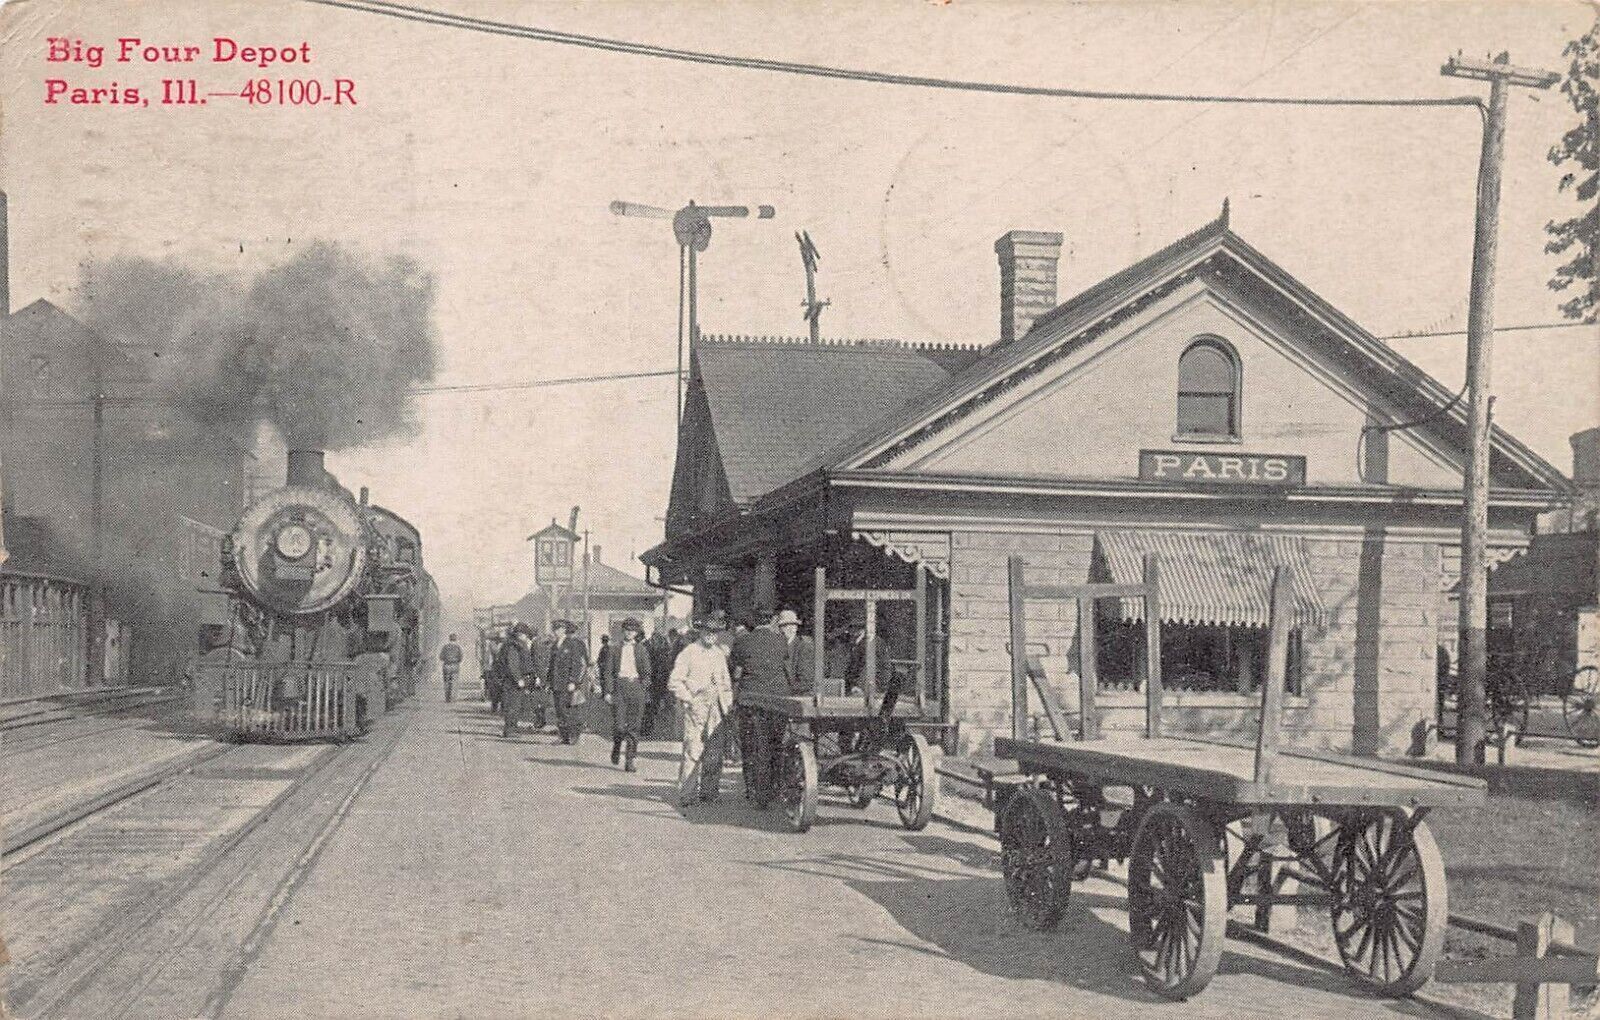 Paris IL Illinois Train Station Big Four Depot Railway Railroad 1913 Postcard L4